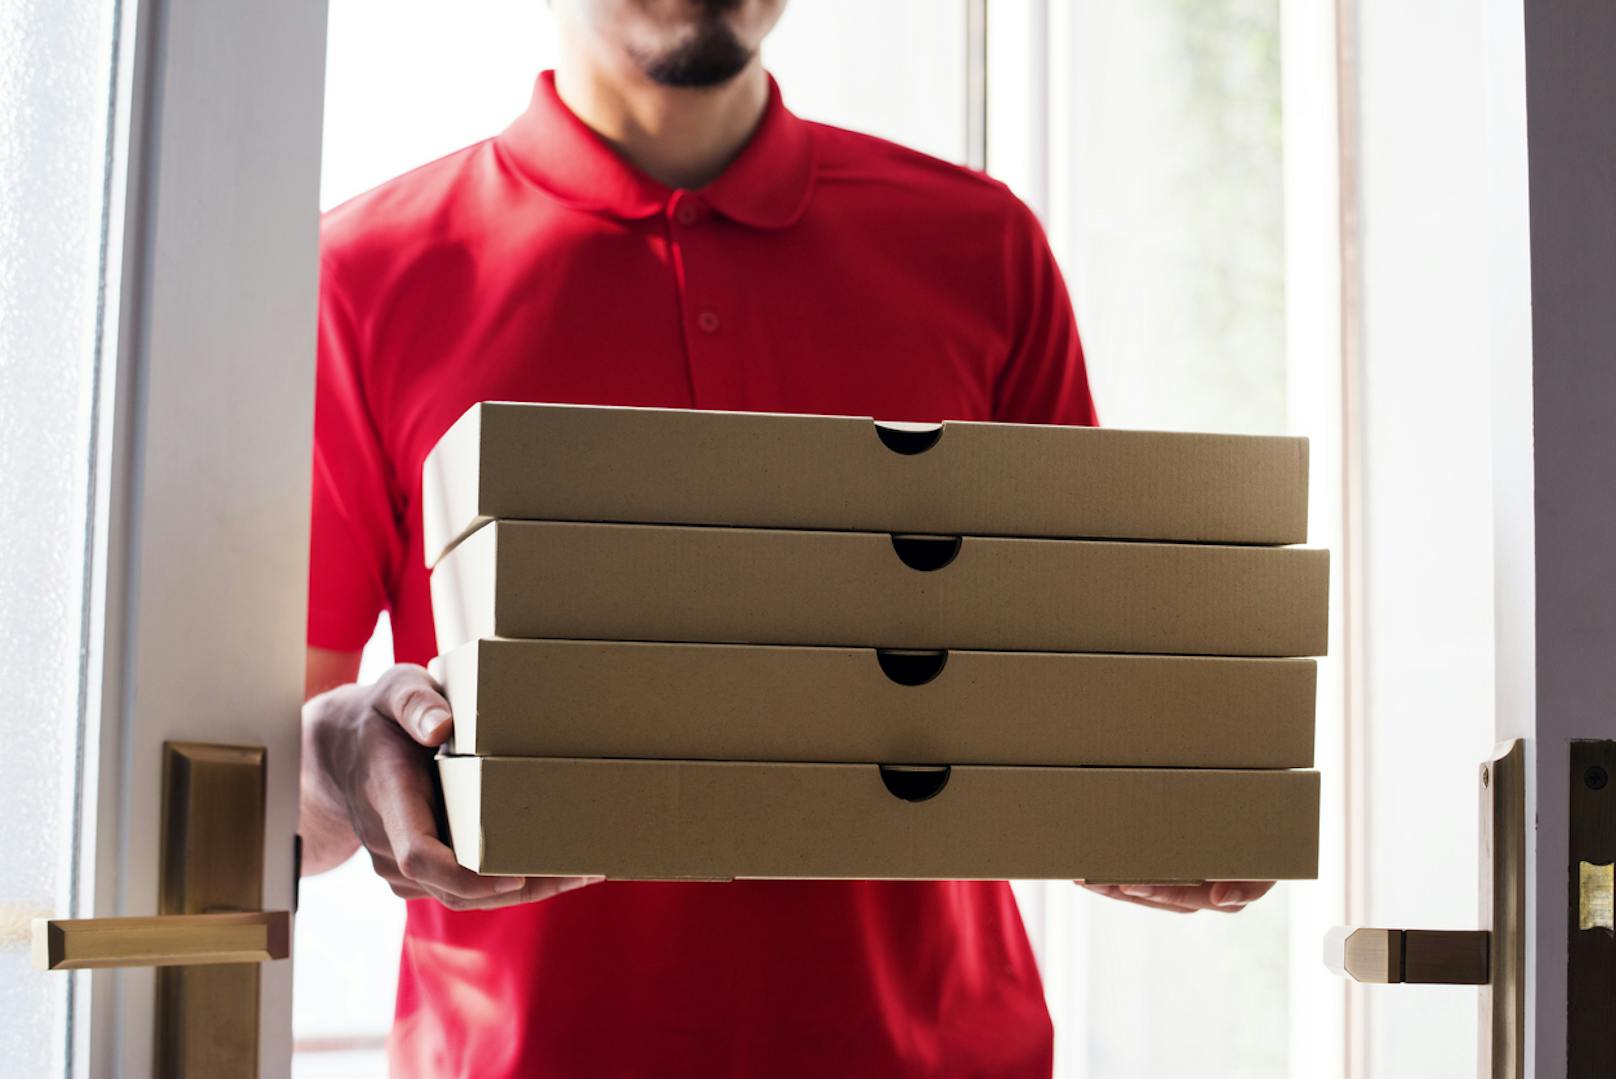 Die 19-Jährige bestellte laut Polizei 50 Pizzen, nur um ihren Ex-Freund beim Ausliefern beobachten zu können.